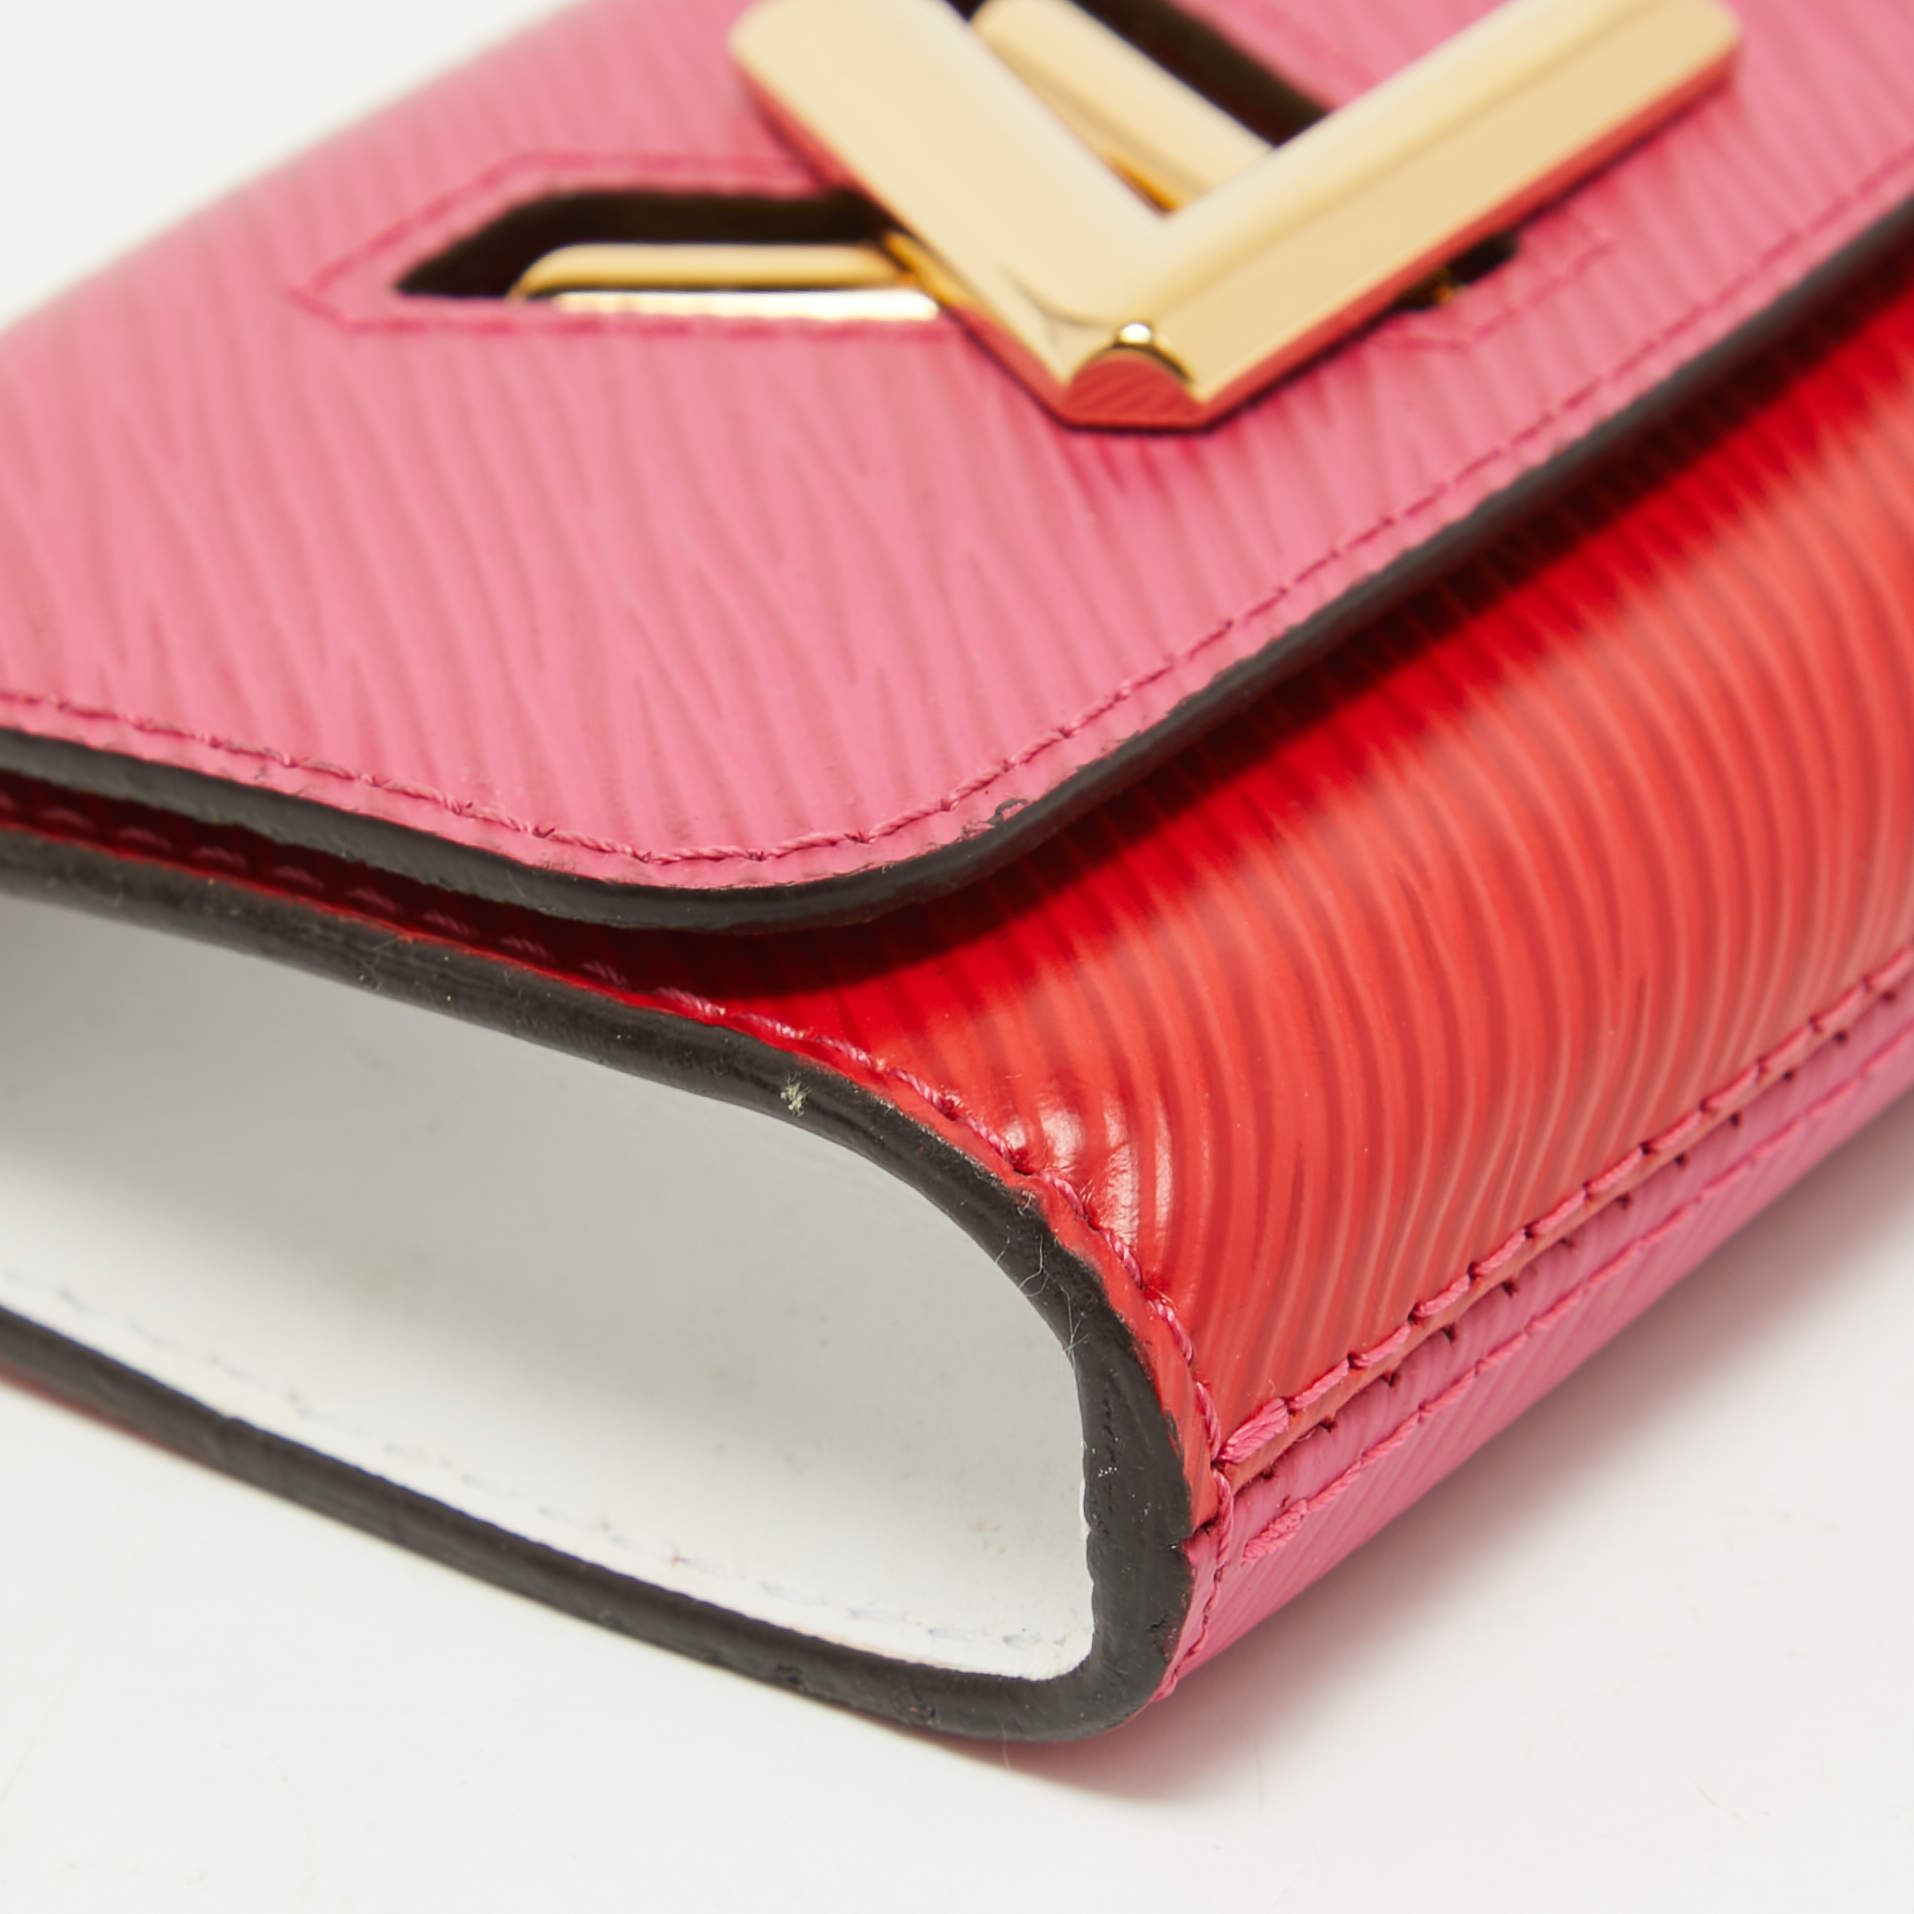 Louis Vuitton Twist Compact Wallet M62055 Epi Leather